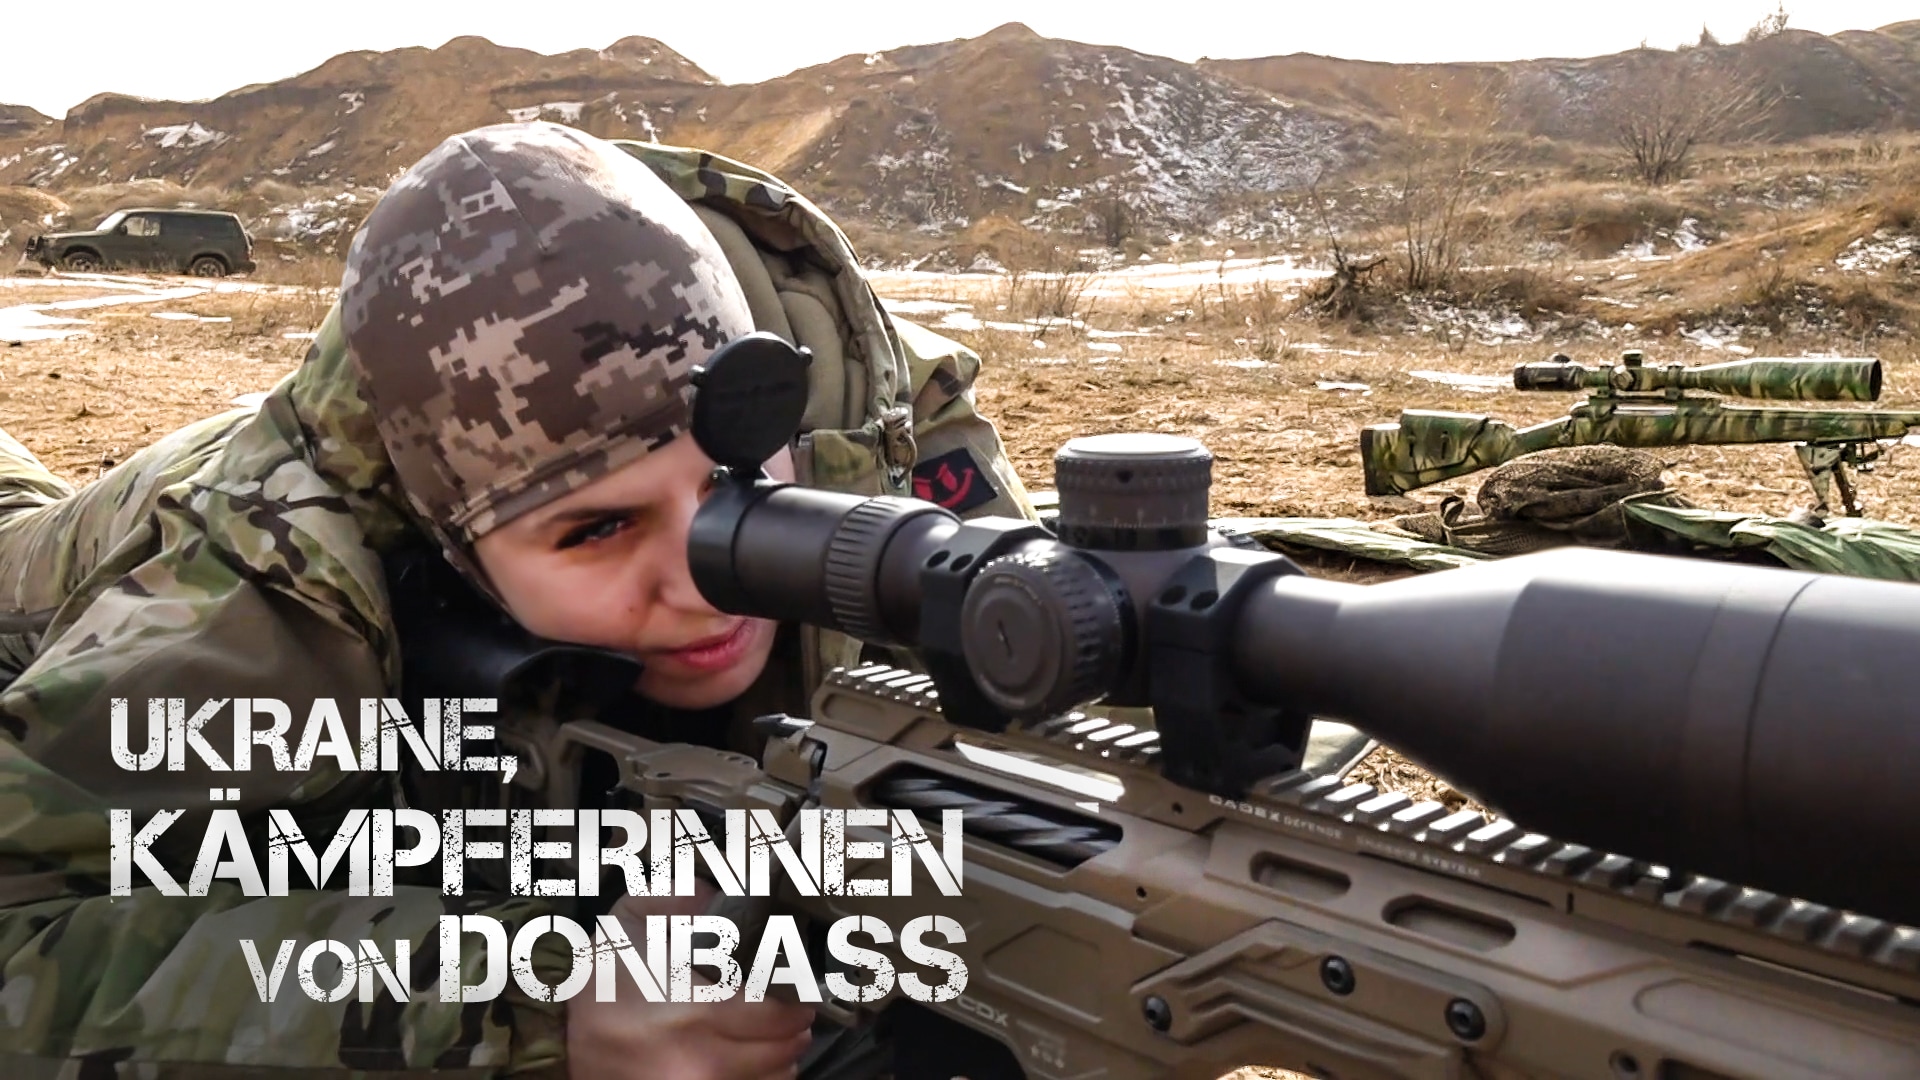 Ukraine - Die Kämpferinnen von Donbass